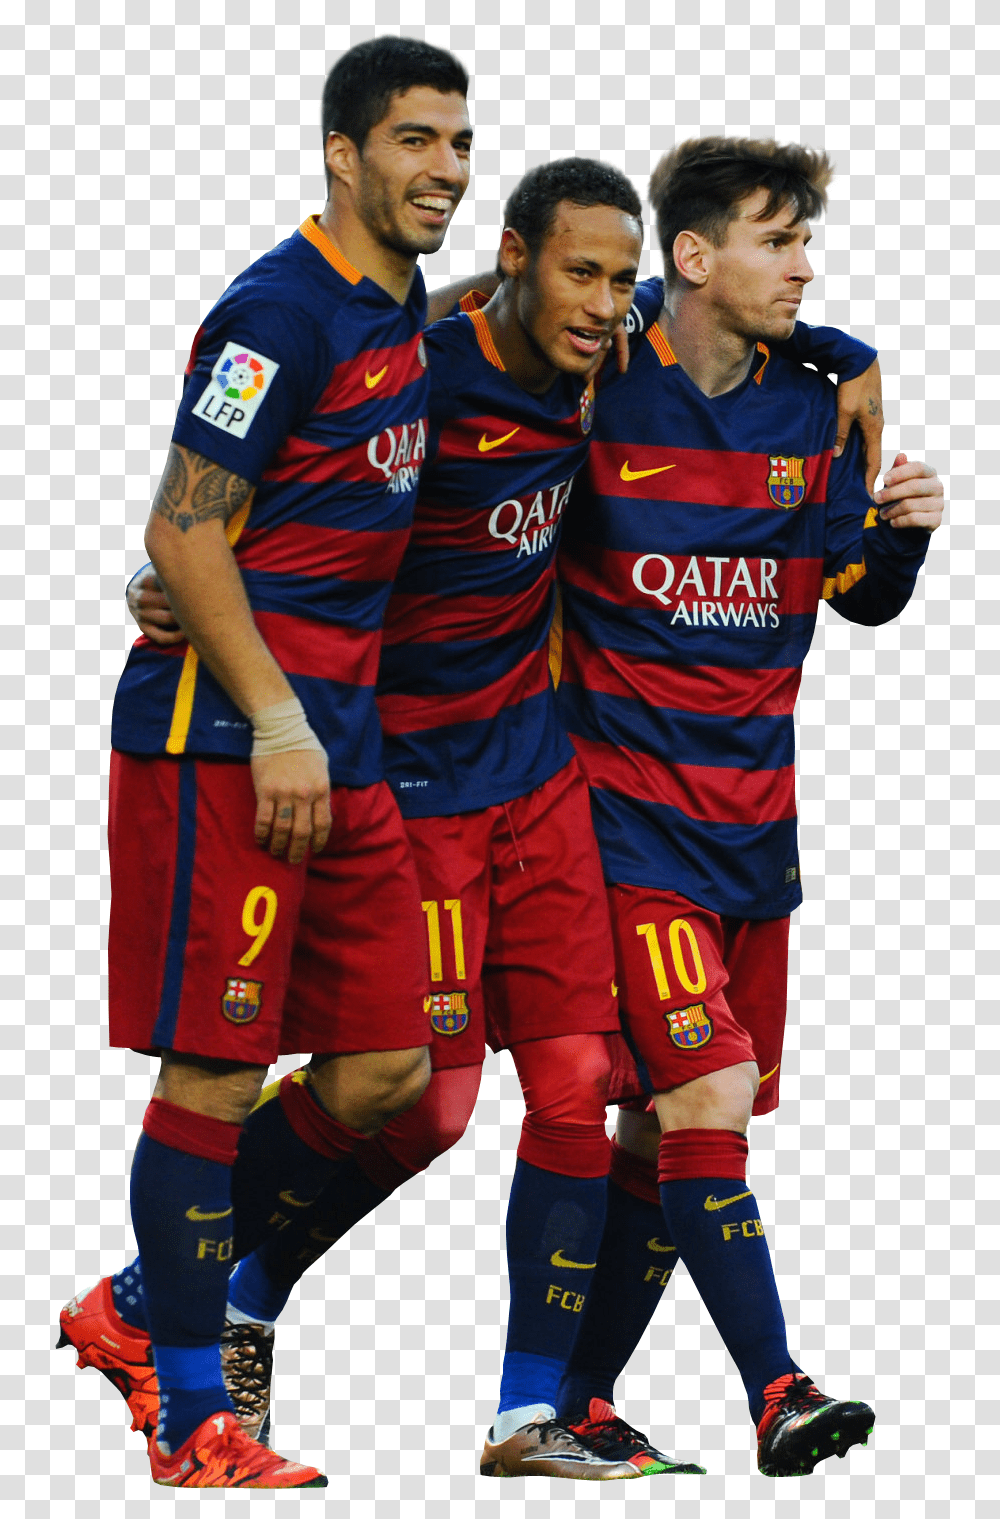 Luis Suarez Neymar & Lionel Messi Football Render 19180 Neymar Et Messi Et Suarez, Person, Shoe, Clothing, People Transparent Png